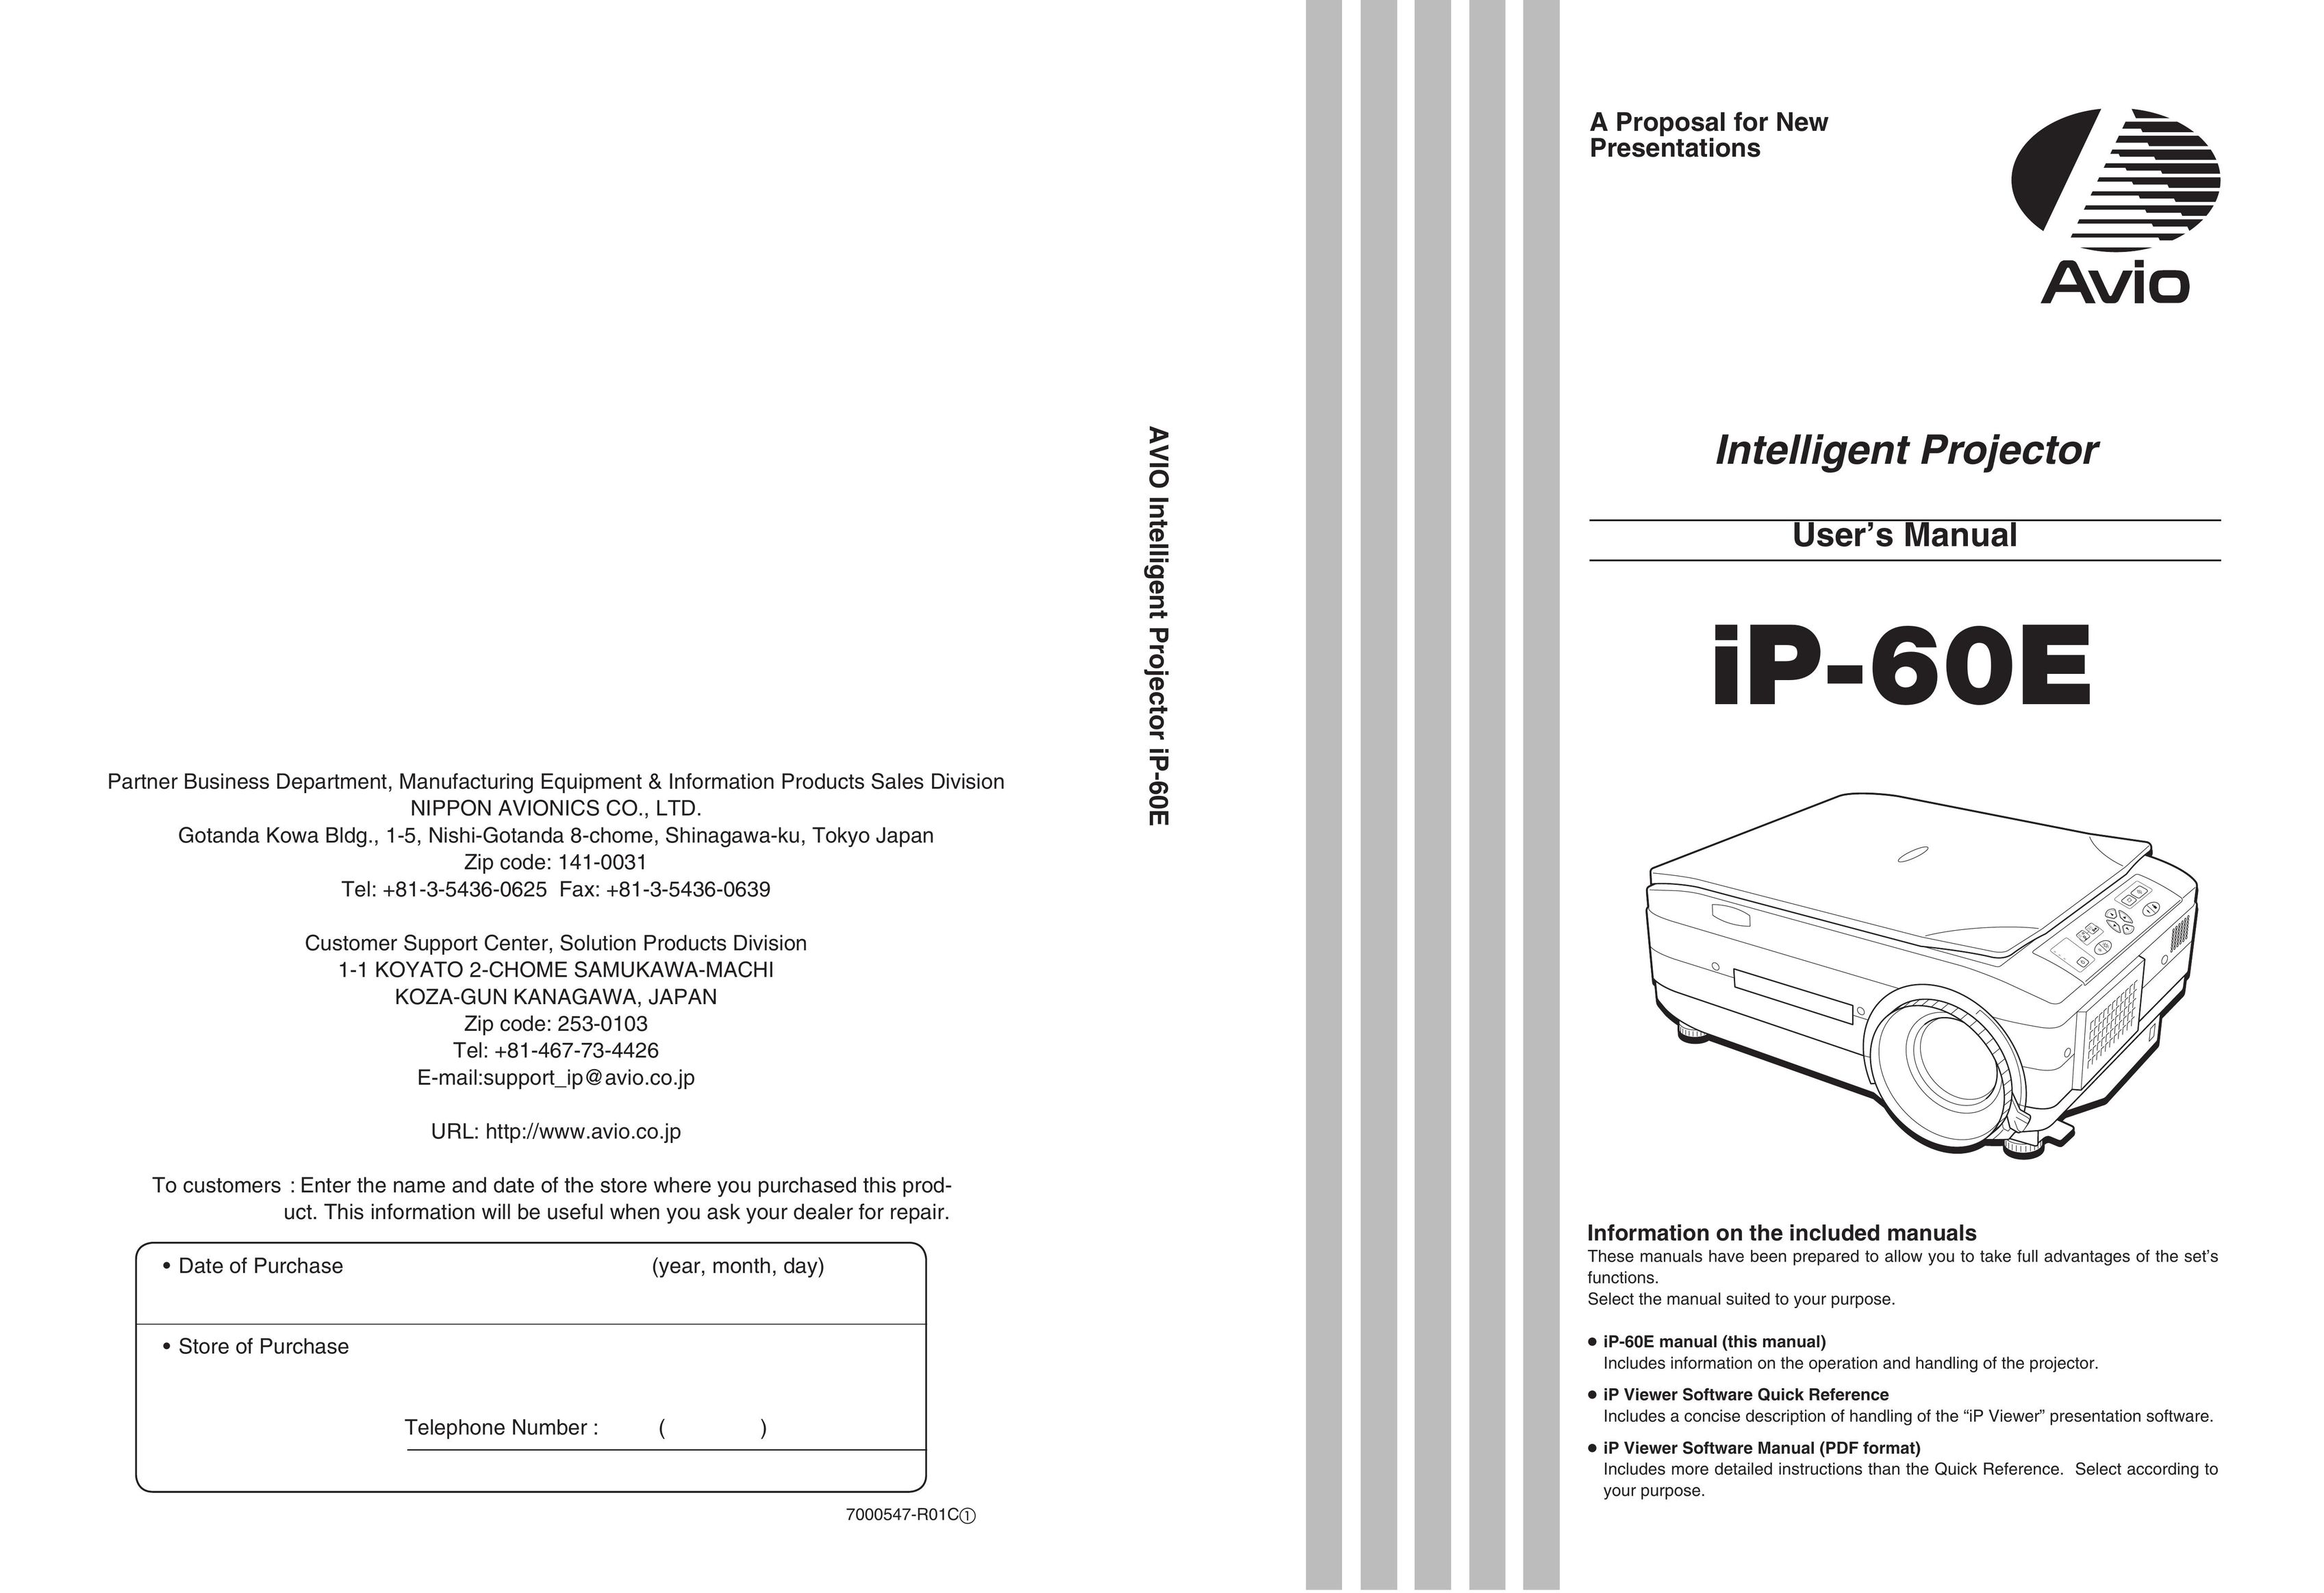 Compaq iP-60E Projector User Manual